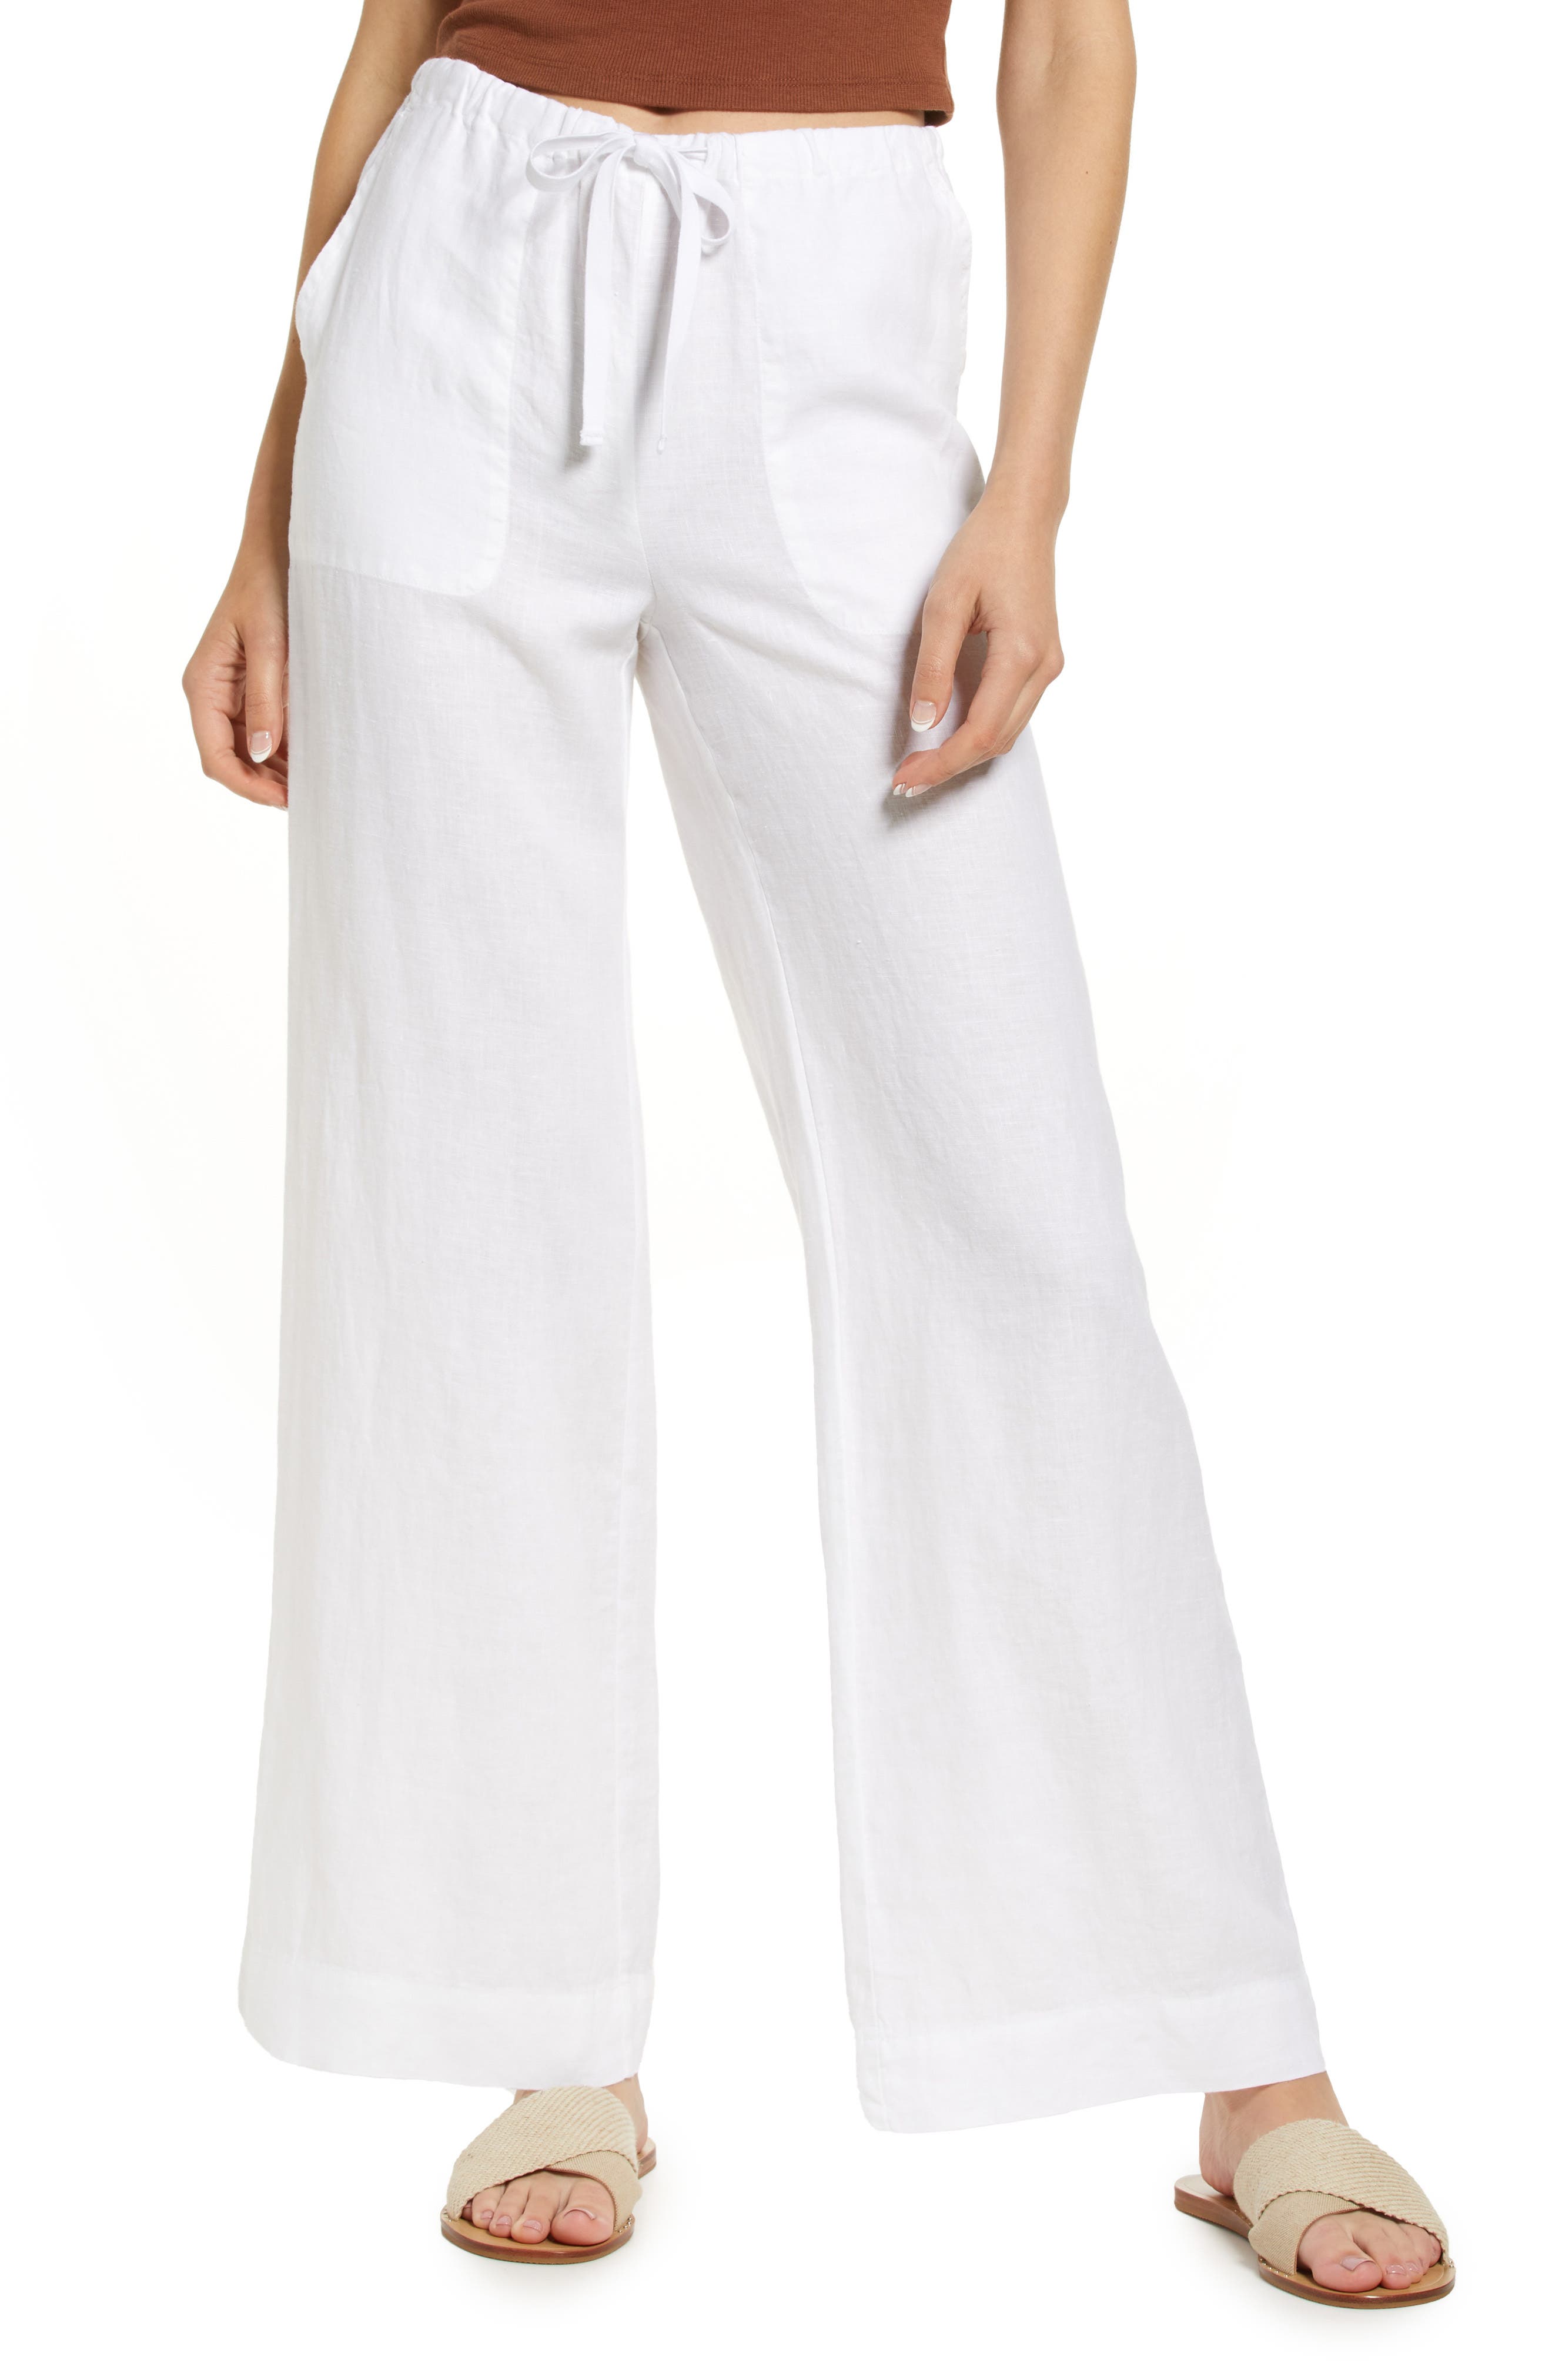 Linen culottes pants  Terracotta linen pants  Woman's linen pants  Loose pants  Short flared pants  Soft linen trousers